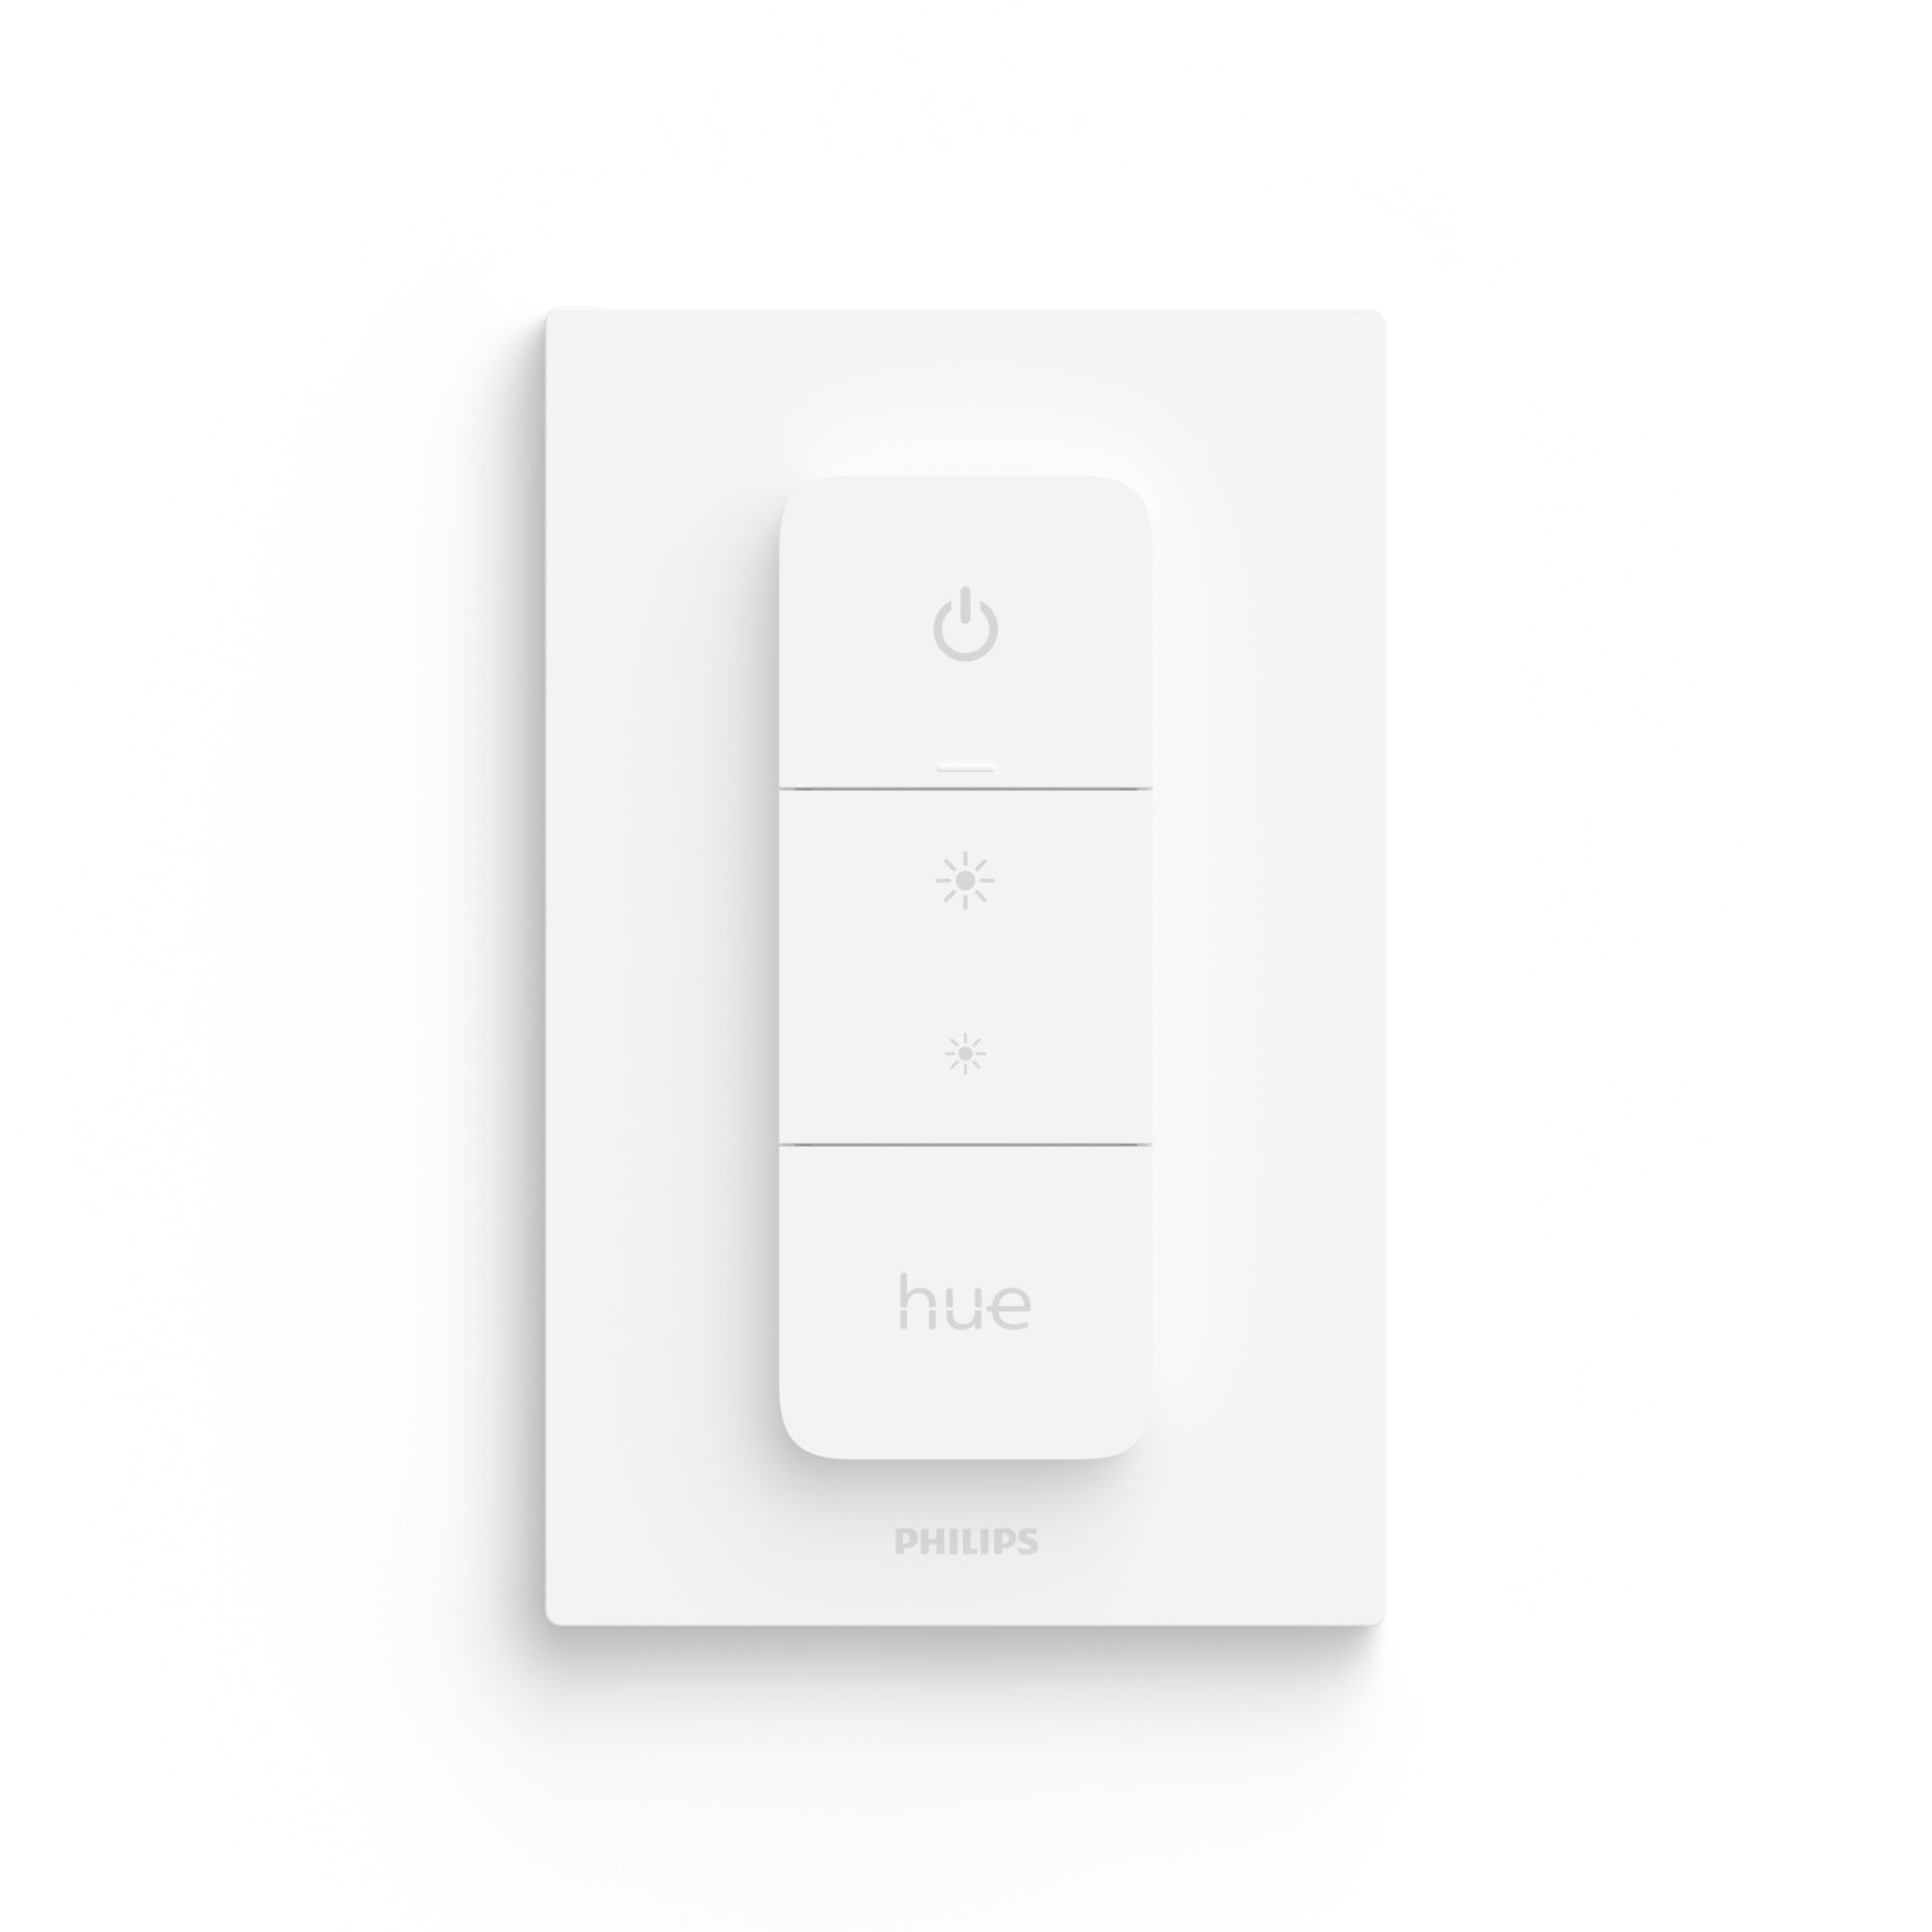 Telecomando PHILIPS HUE Hue Dimmer Switch per lampadina con Accensione e spegnimento luce App Philips Hue: Android 7.0 e versioni successive, iOS 11 e versioni successive - 1